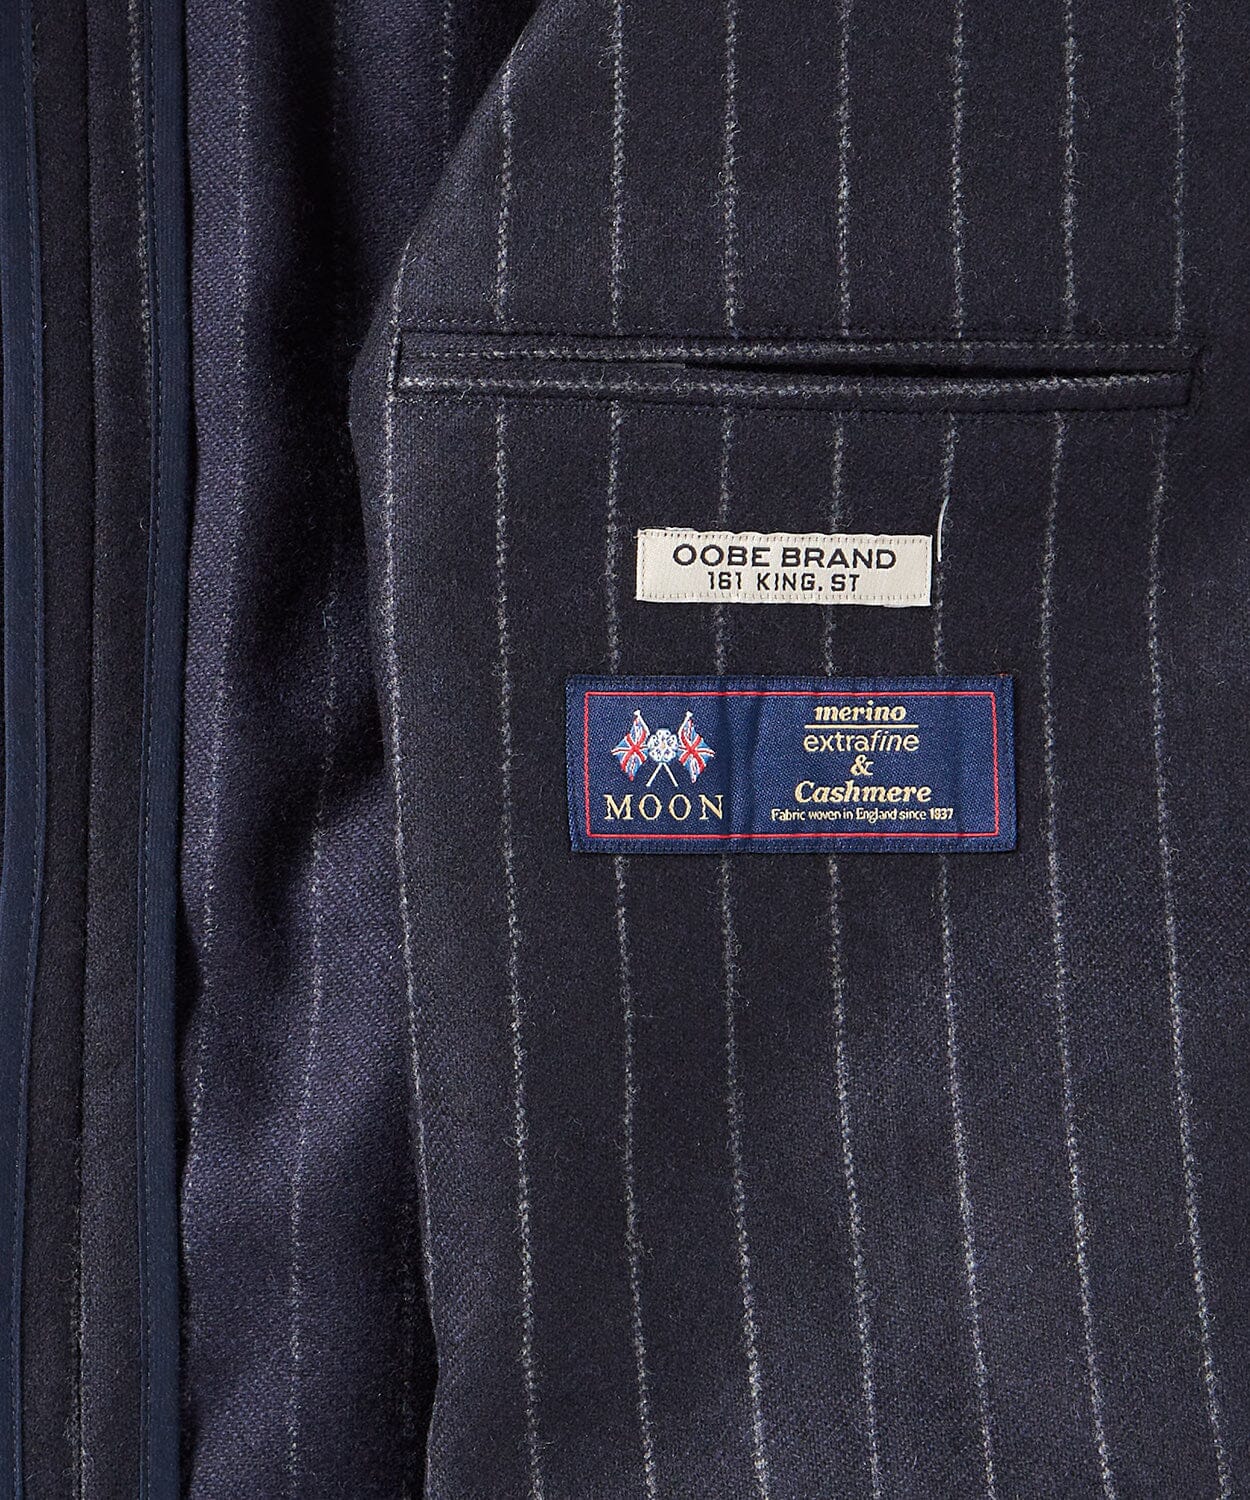 mens striped sport jacket - details